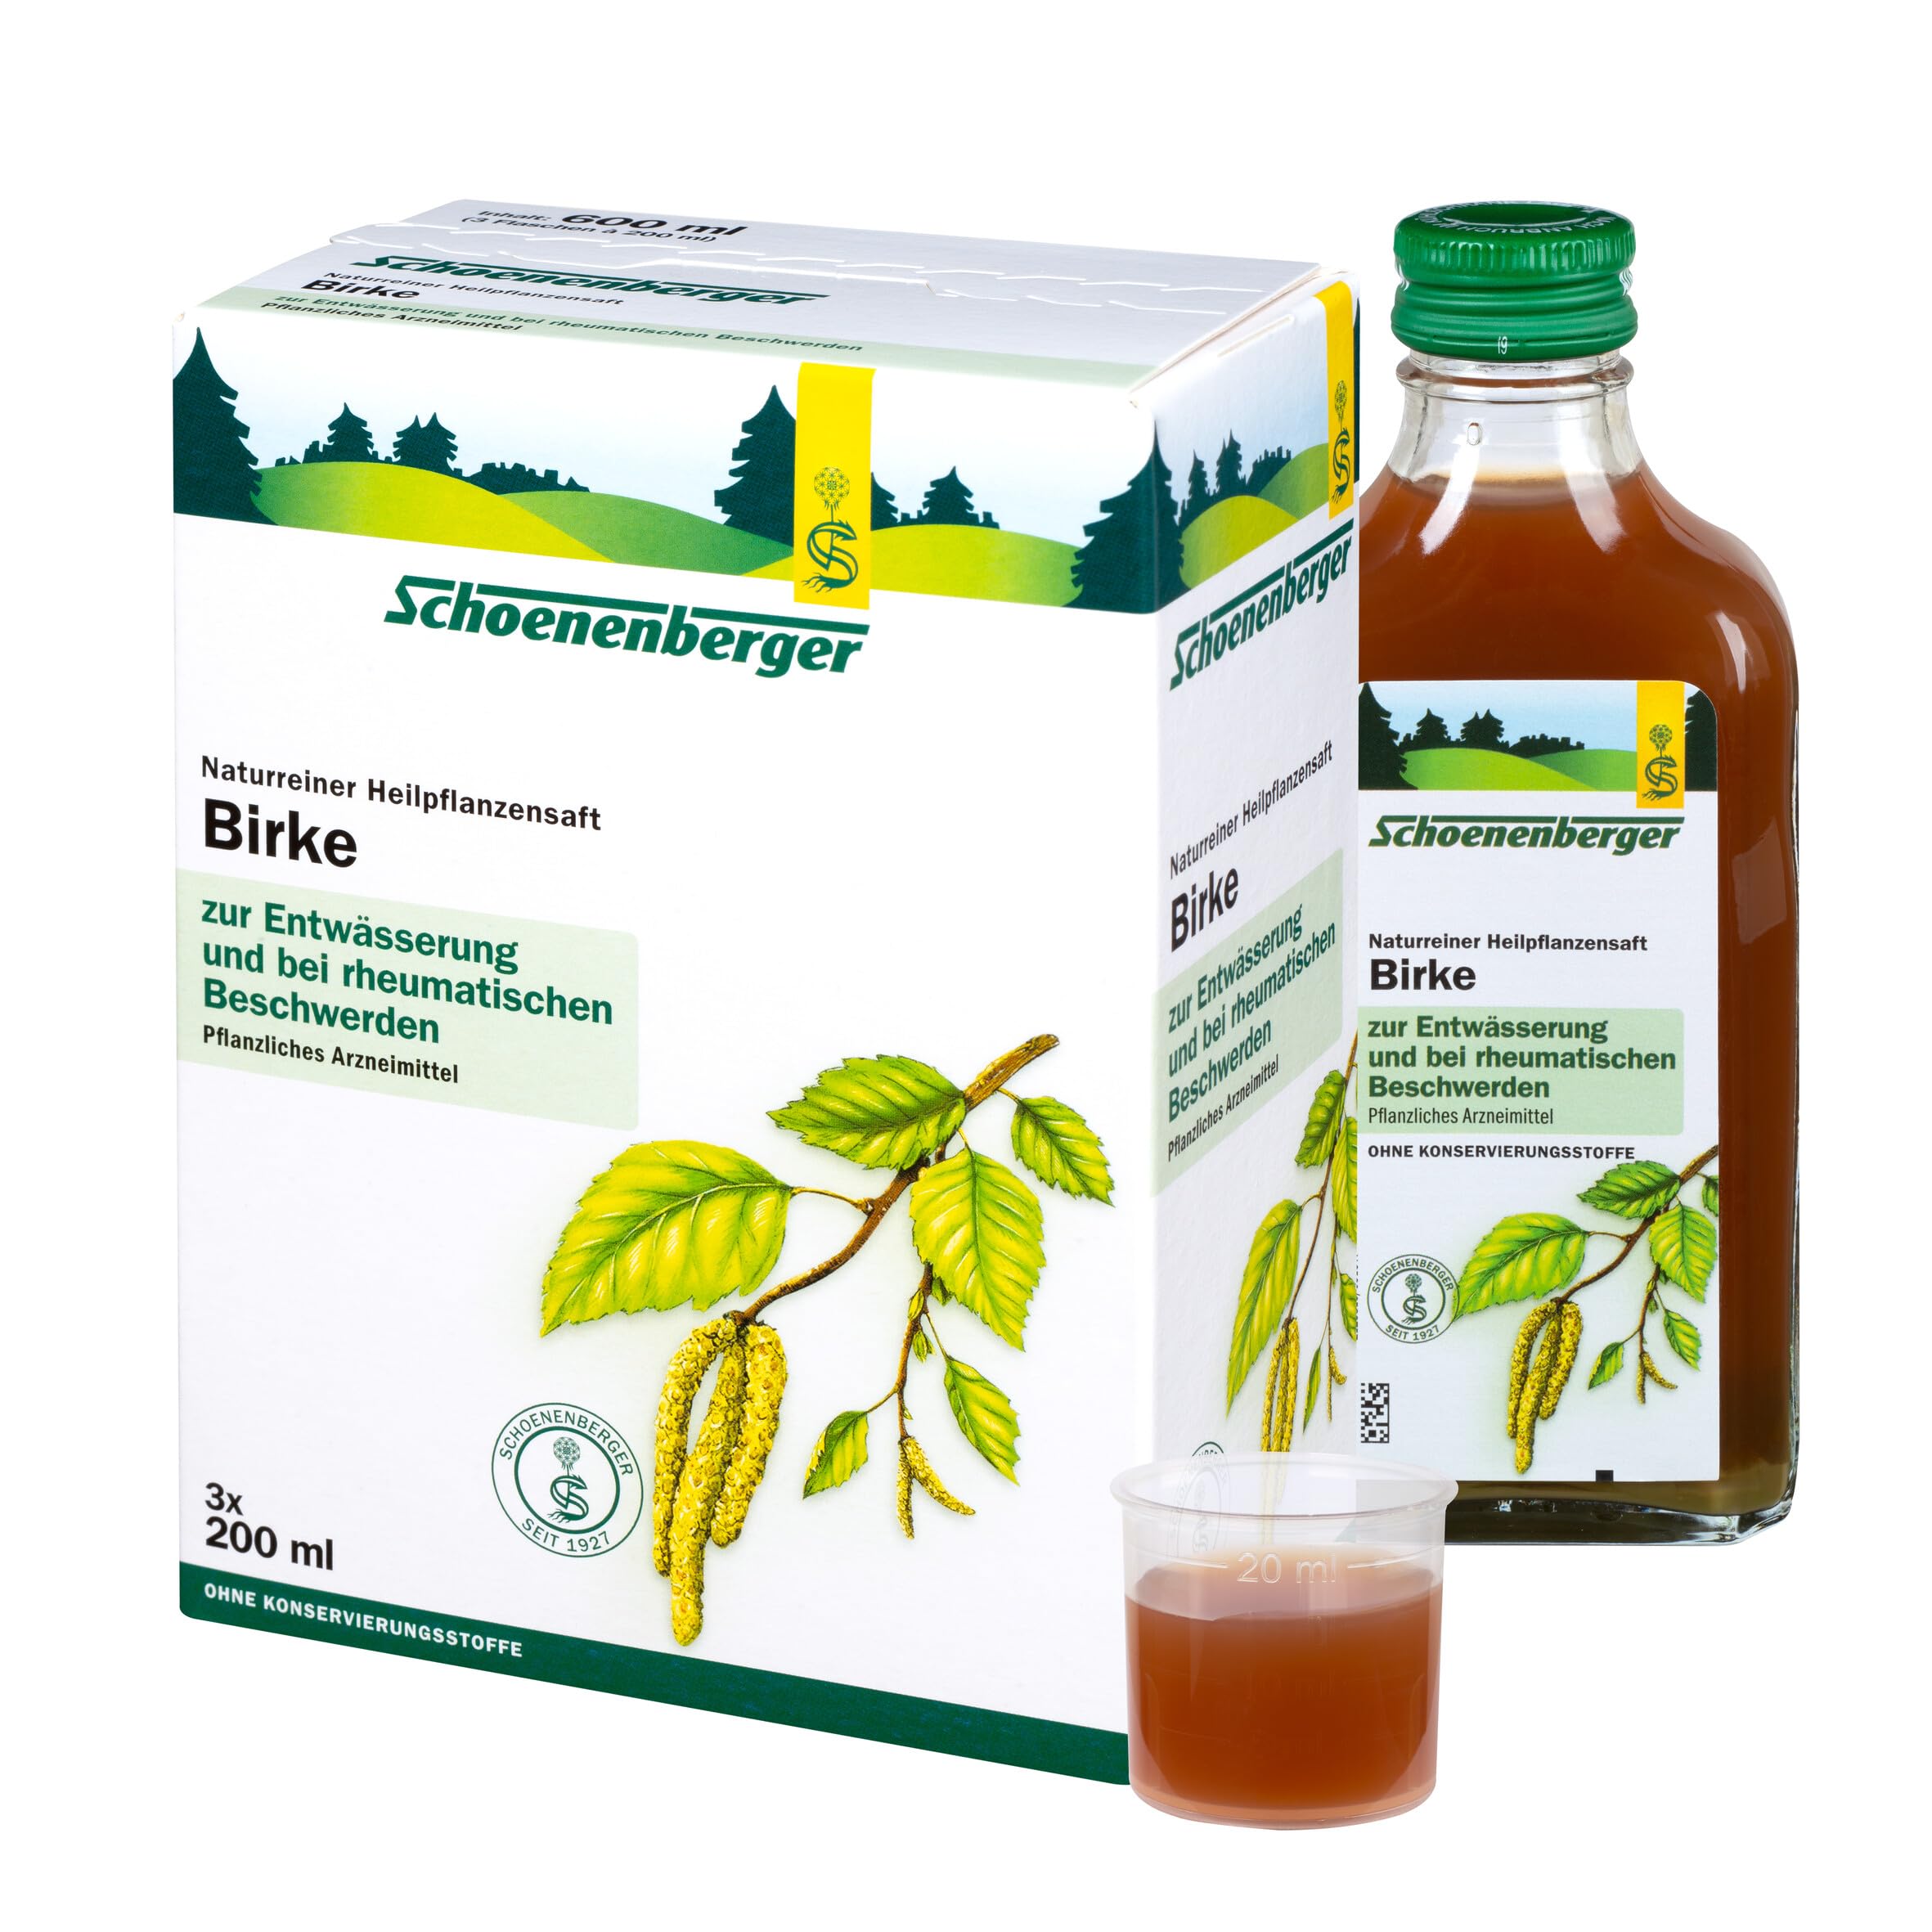 Schoenenberger - Birke naturreiner Heilpflanzensaft - 3x 200 ml (600 ml) Glasflaschen - freiverkäufliches Arzneimittel - unterstützende Behandlung rheumatischer Beschwerden